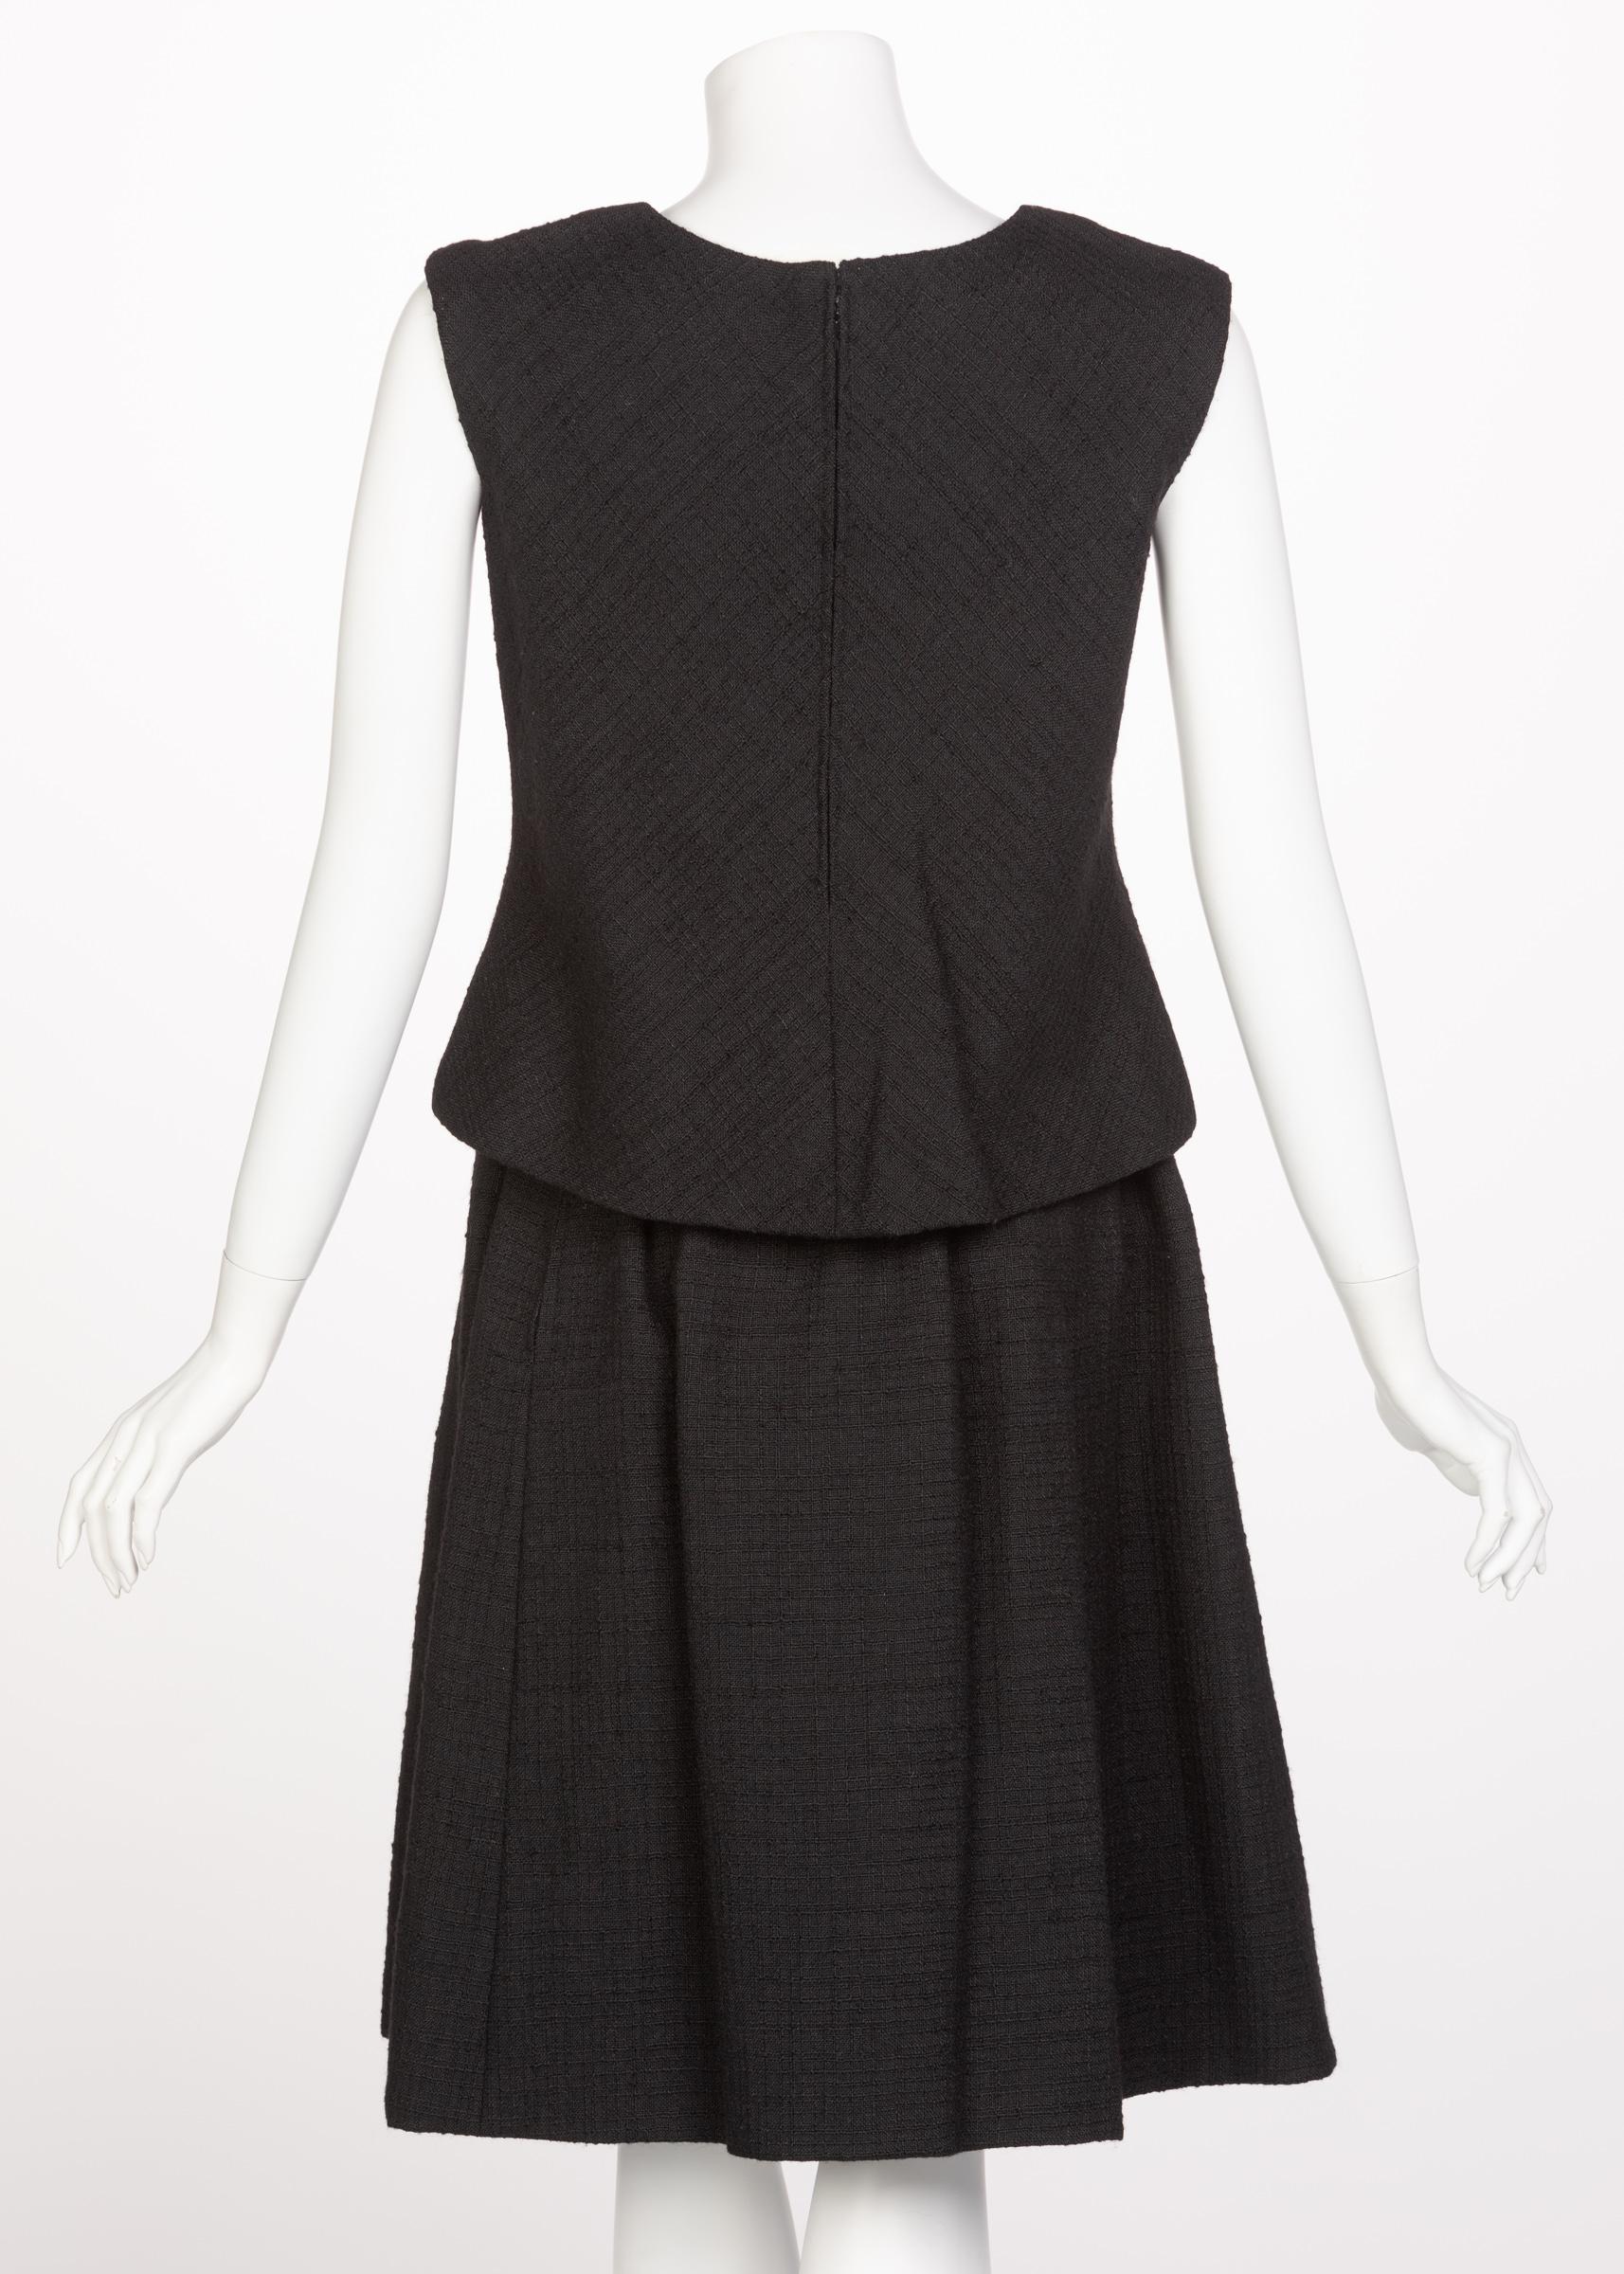 Norman Norell Couture Tailleur jupe tailleur noir/haut sans manches, années 1960 Pour femmes en vente